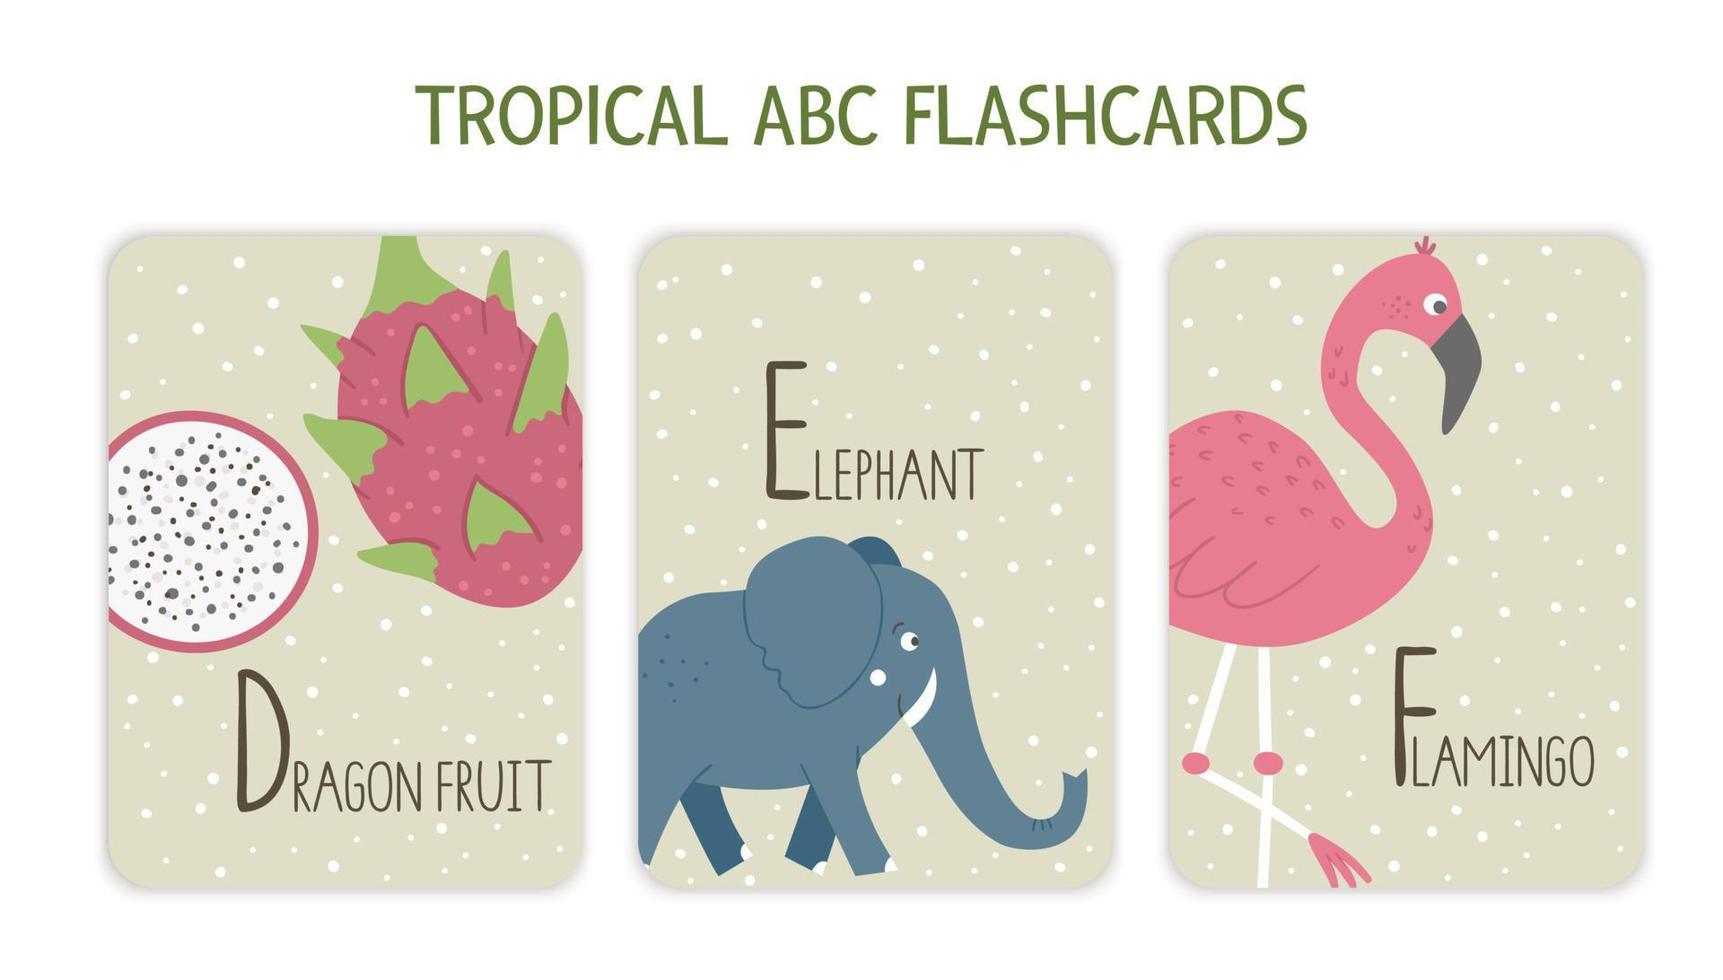 letras coloridas del alfabeto d, e, f. flashcard de fonética con animales tropicales, pájaros, frutas, plantas. lindas tarjetas educativas abc de la jungla para enseñar a leer con divertidas frutas de dragón, elefantes, flamencos. vector